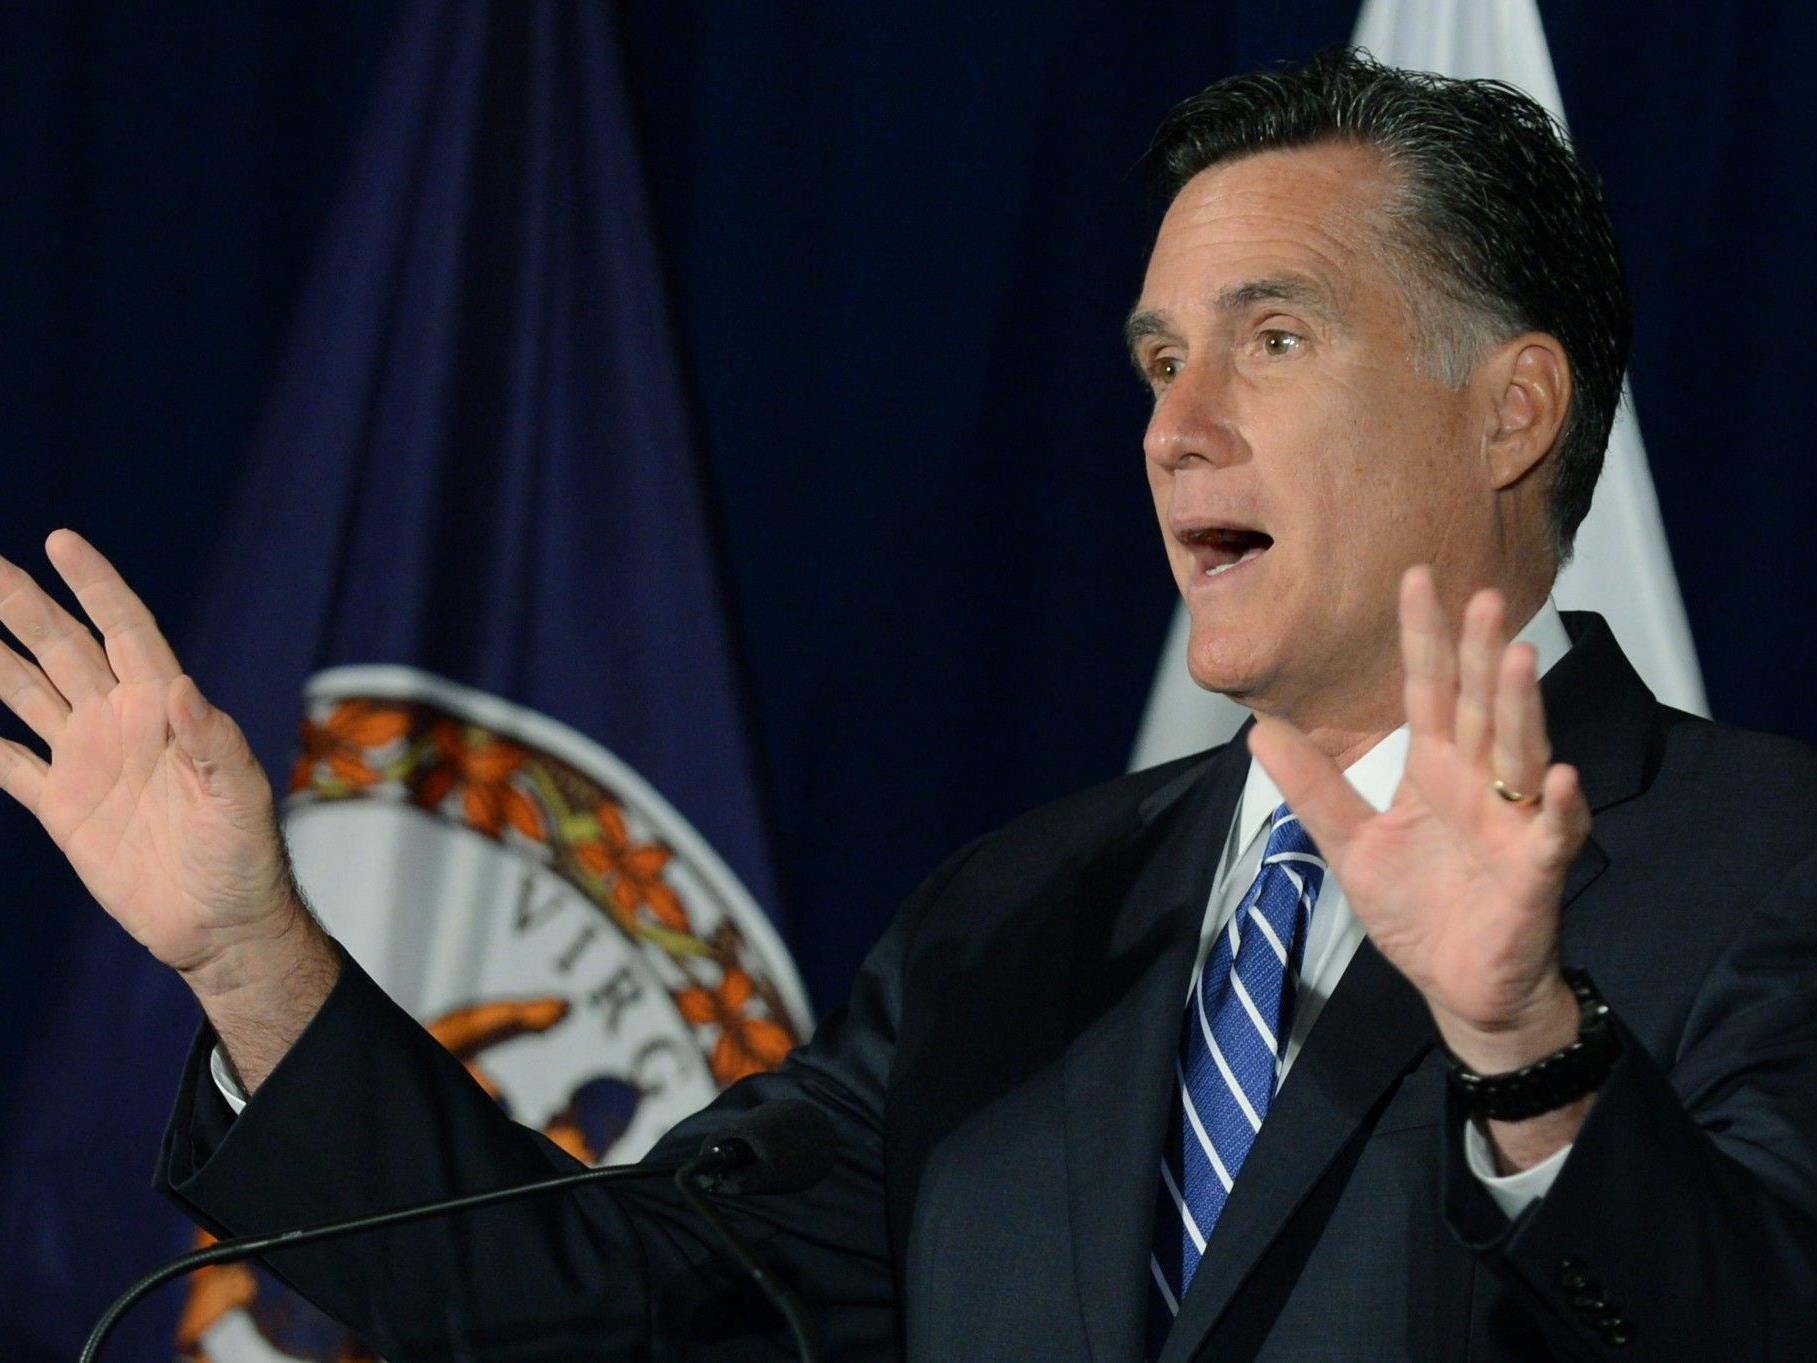 Drehbuchautor zu Romney: "Bitte denken Sie sich einen eigenen Wahlkampfslogan aus."